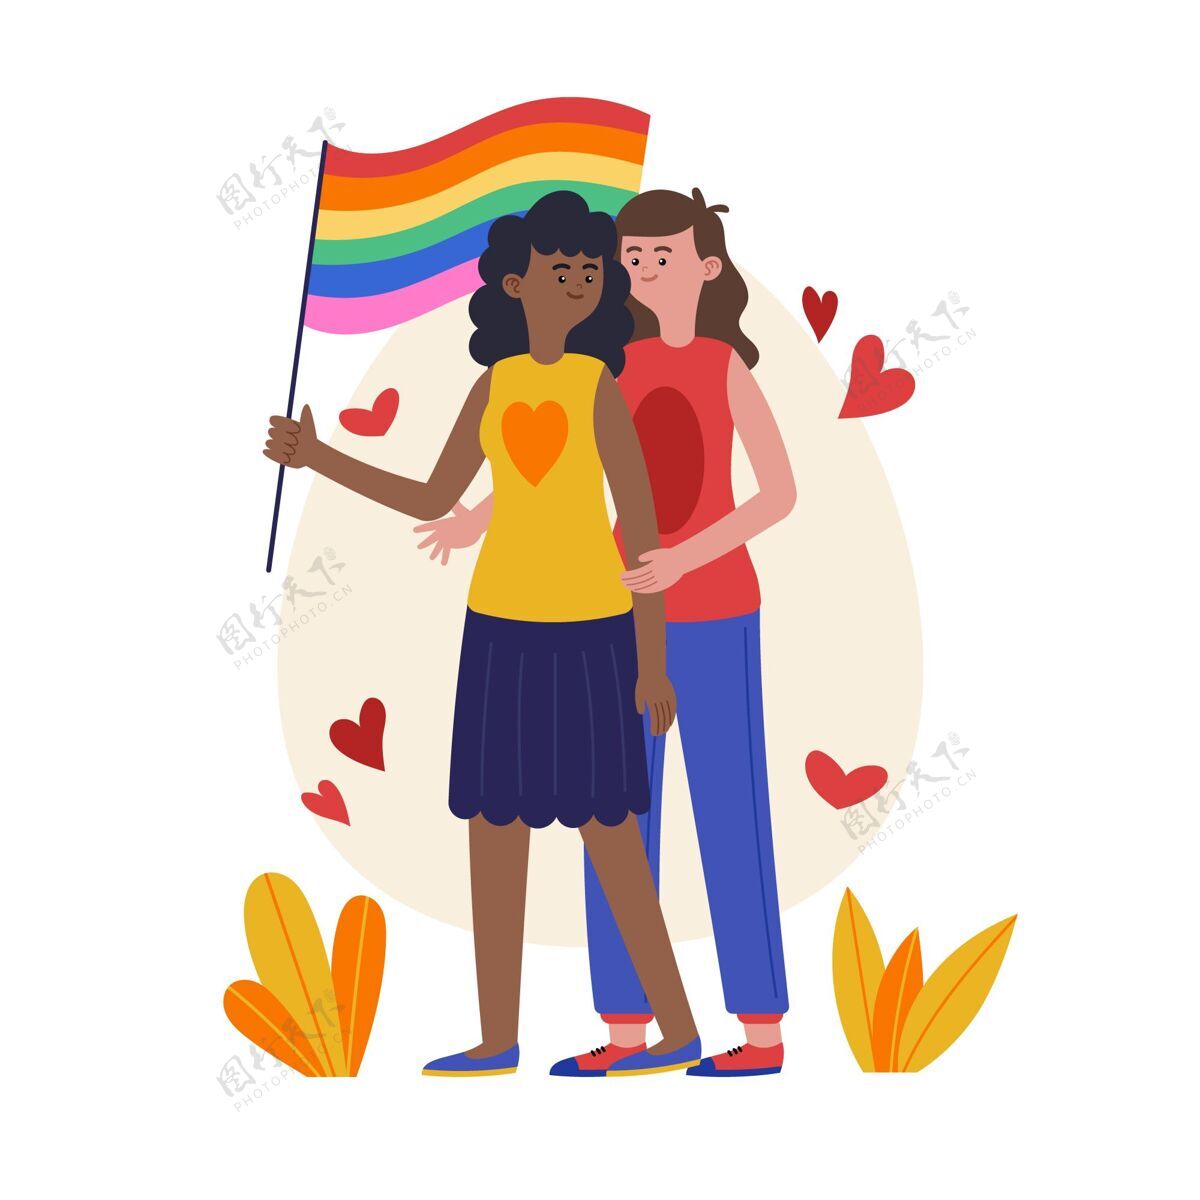 彩虹旗帜有机平面女同性恋夫妇插图与lgbt旗帜女同性恋夫妇女同性恋有机